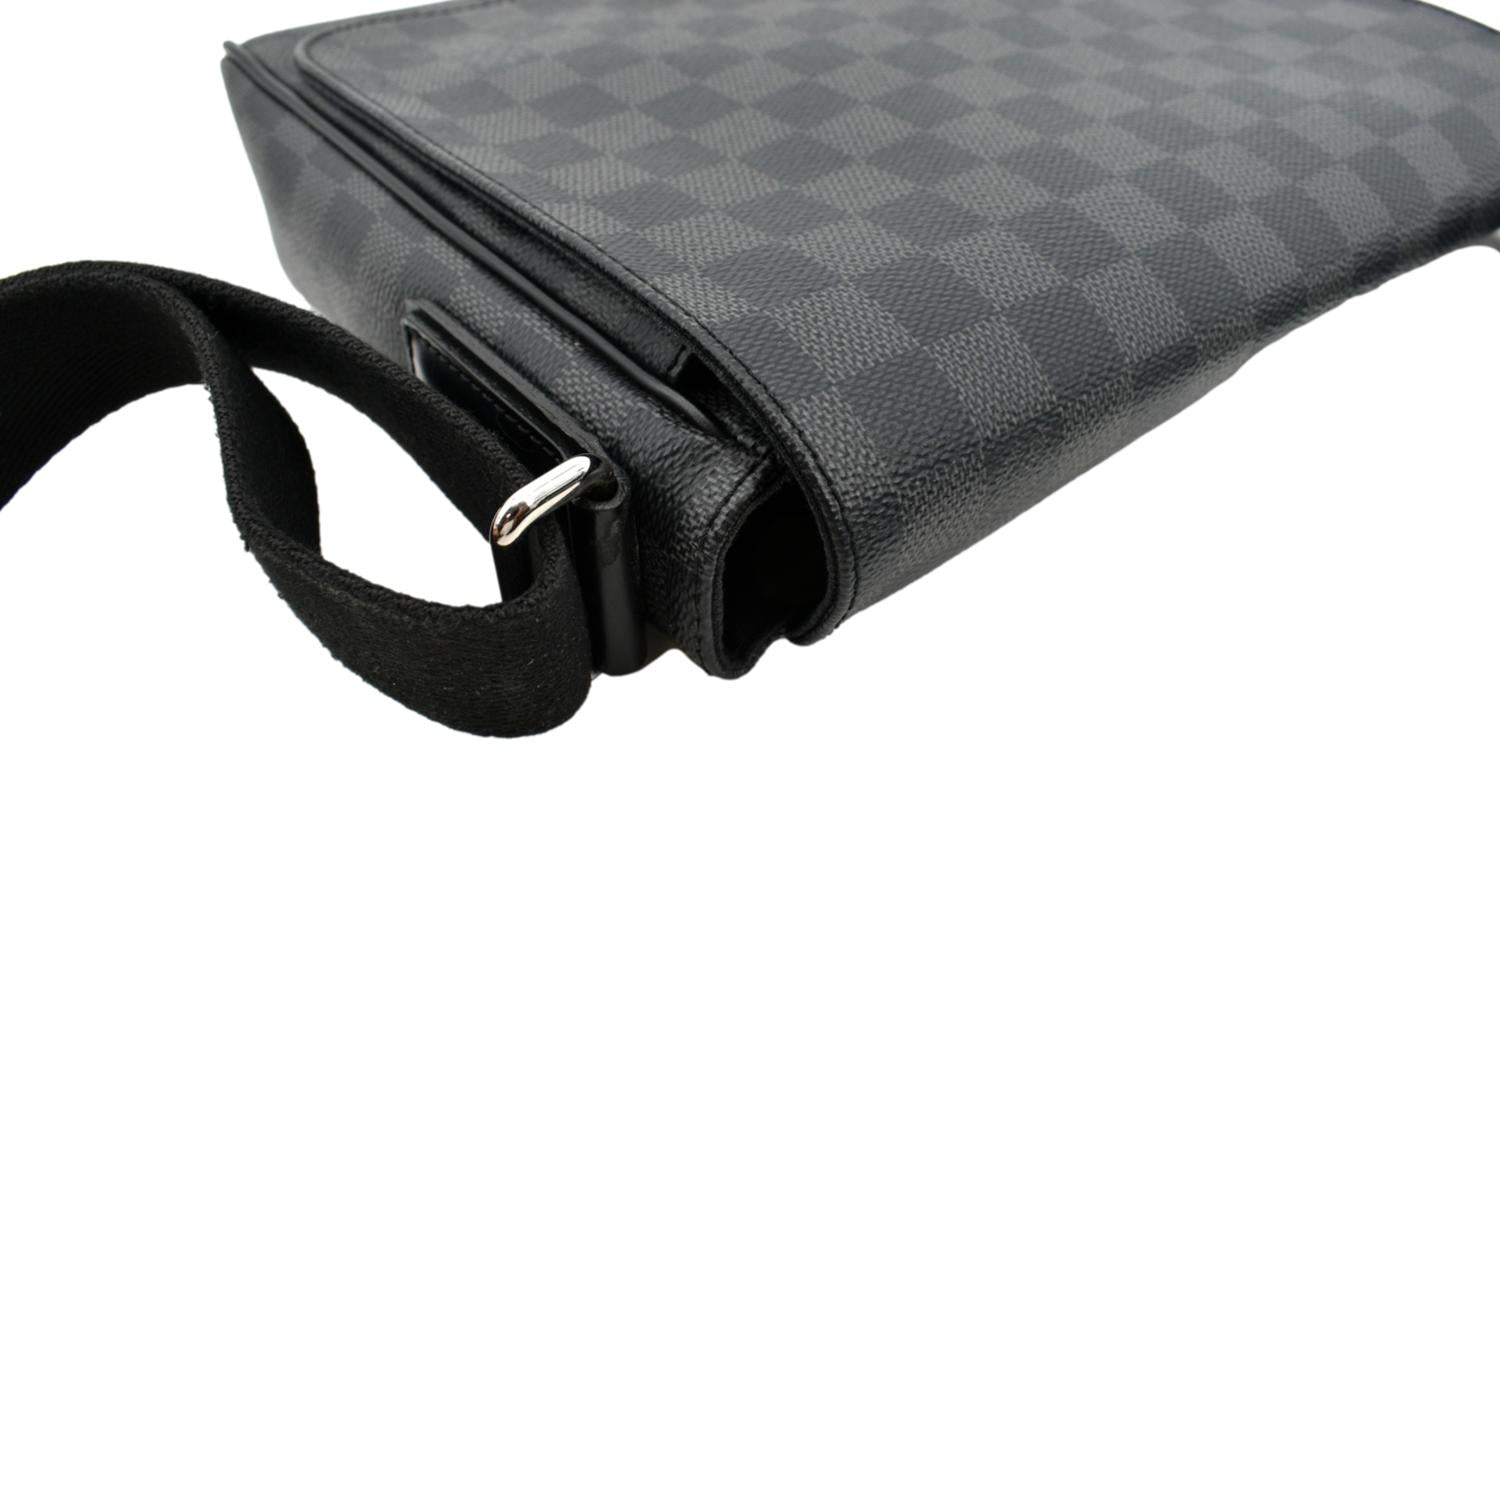 Louis Vuitton District PM Damier Graphite Messenger Bag Black